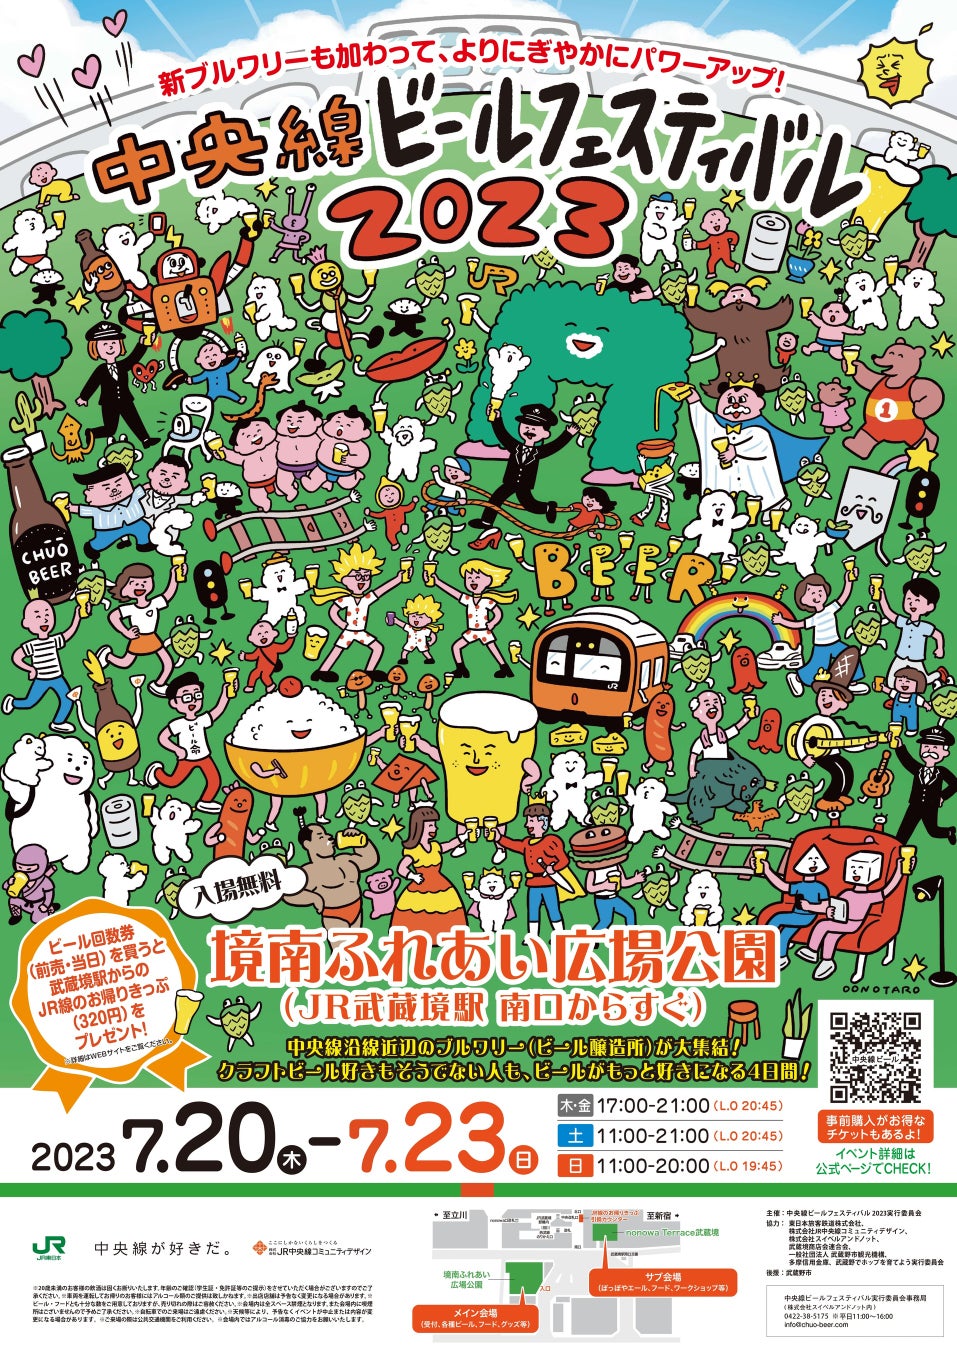 「中央線ビールフェスティバル 2023 Summer」が 7/20-23 に開催！